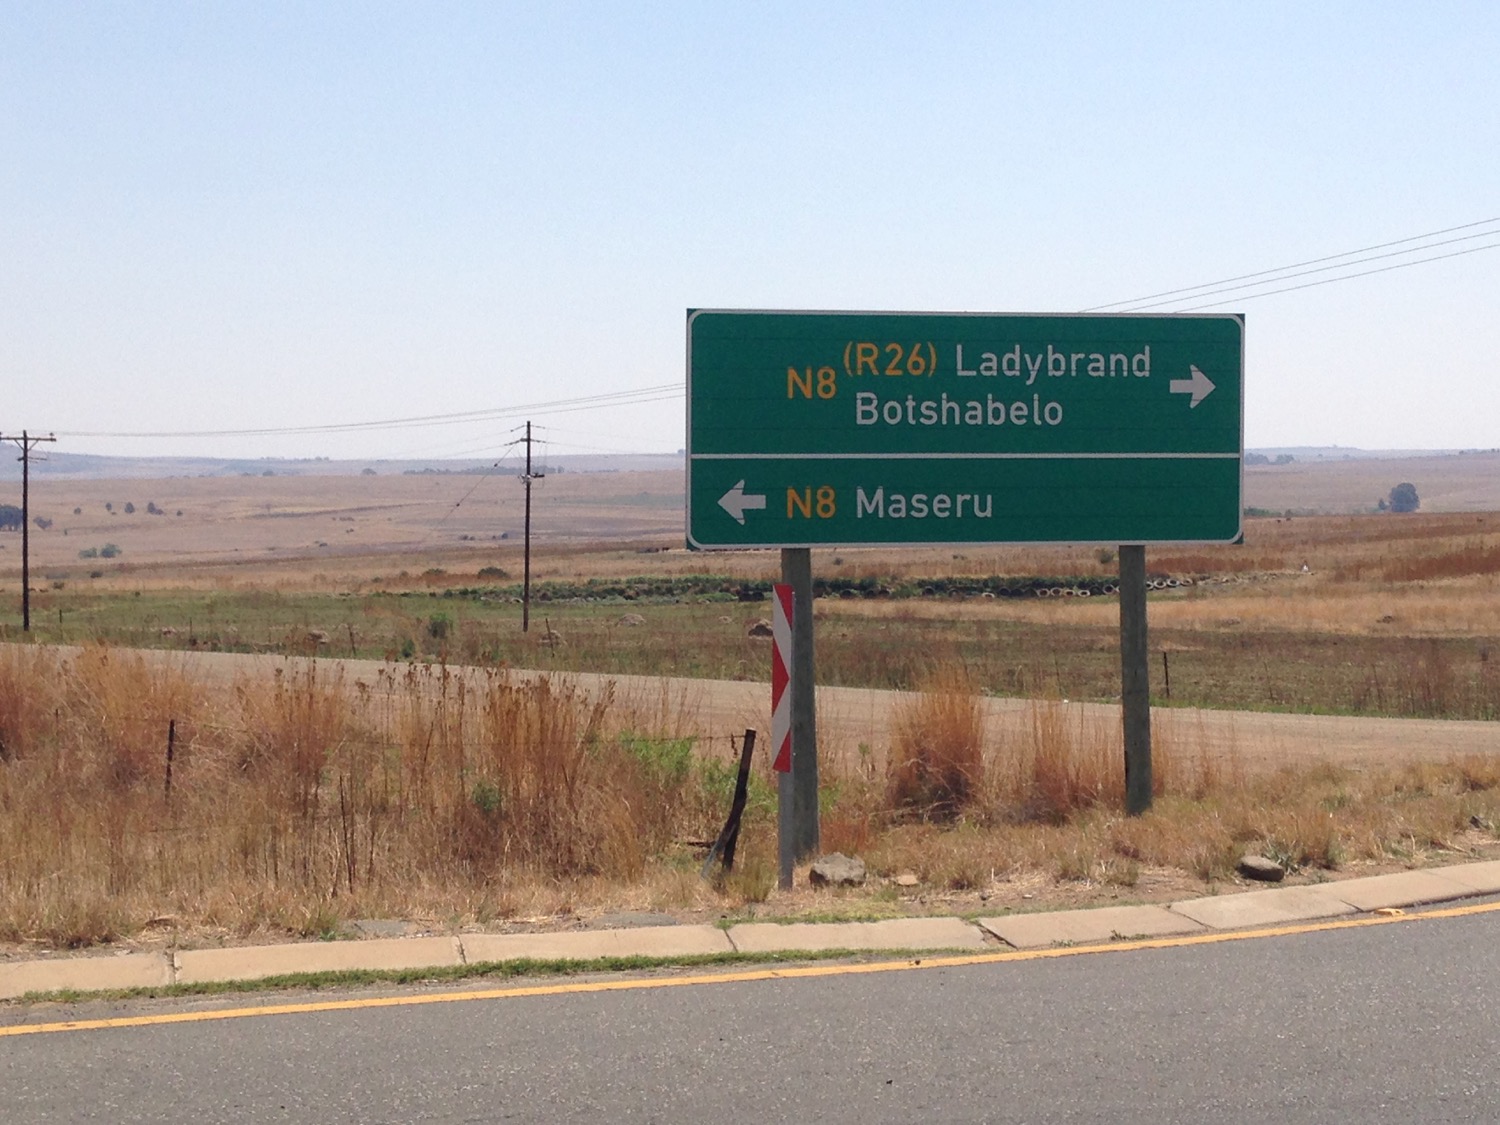 Lesotho Road Trip - 7